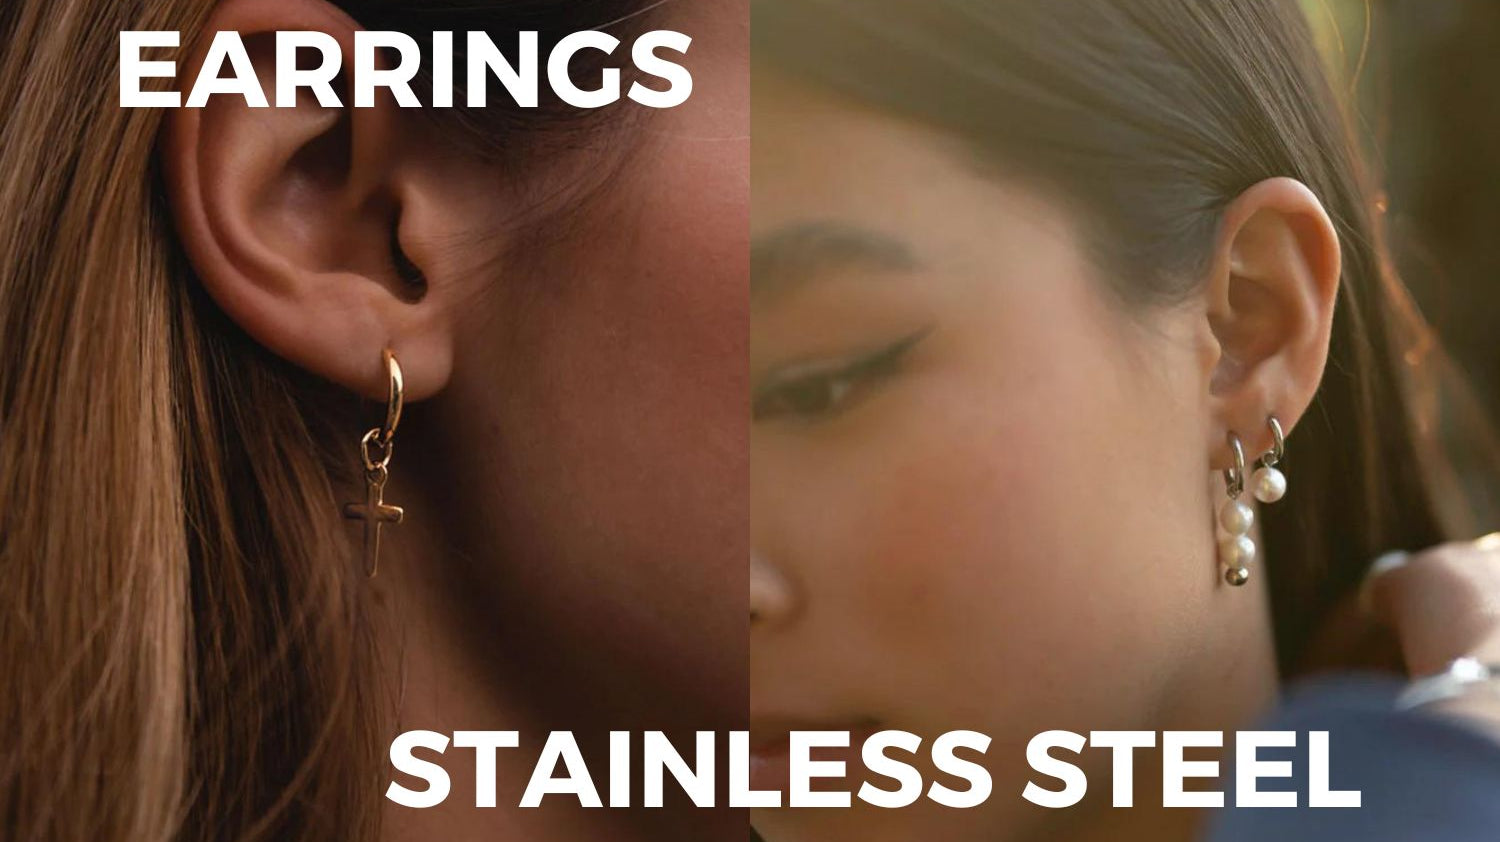 WHY CHOOSE STAINLESS STEEL EARRINGS?